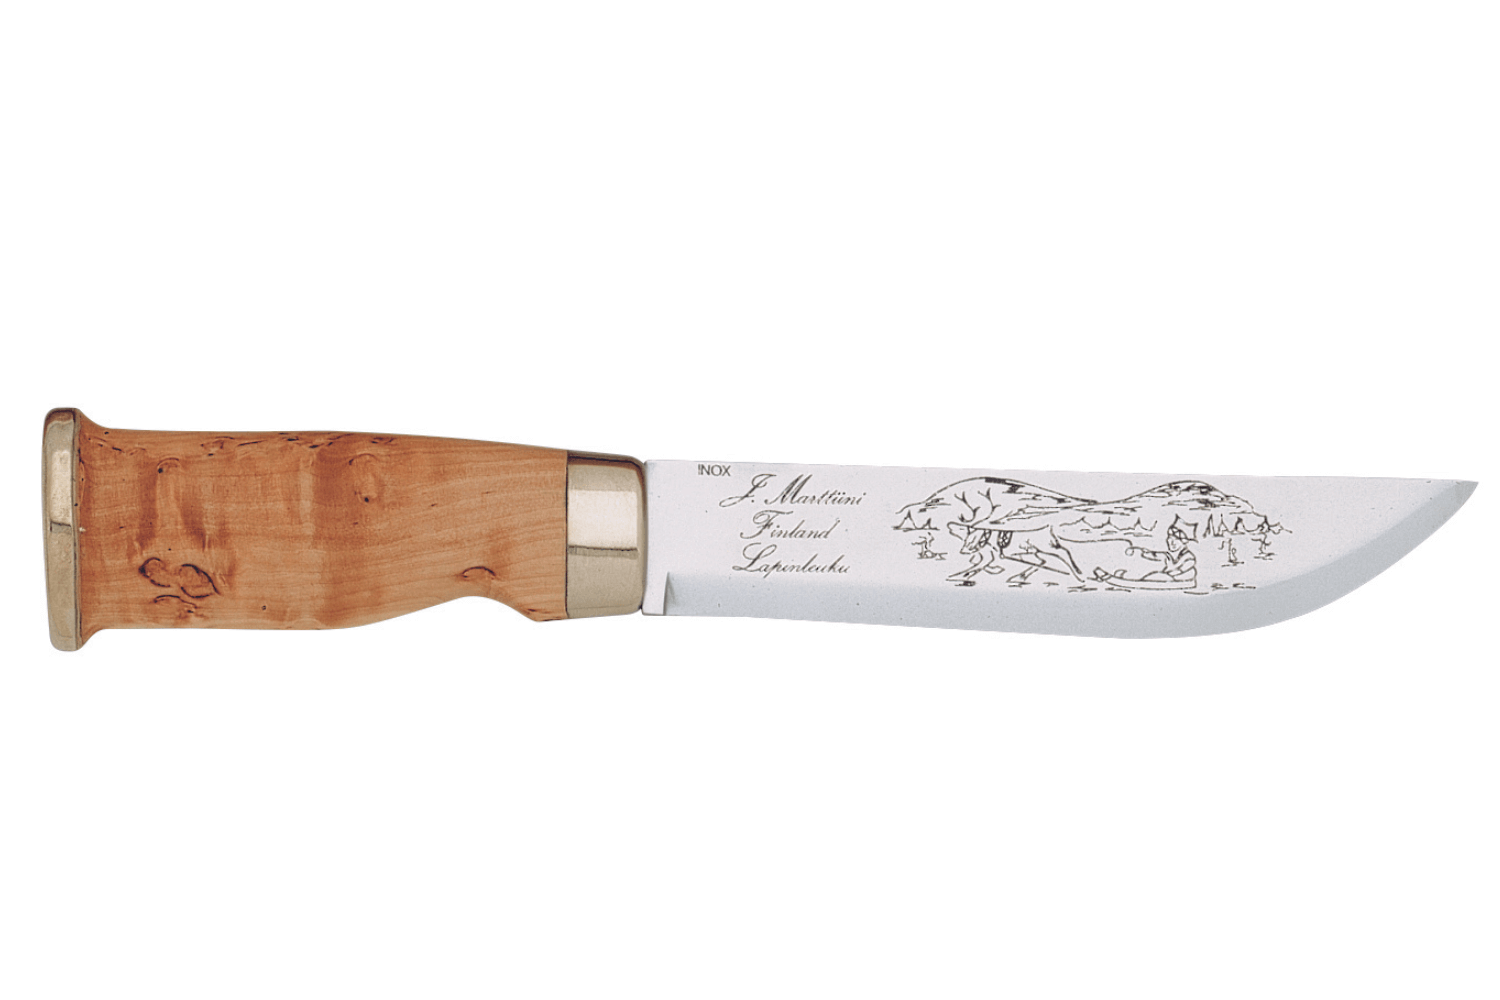 Couteau Santoku - Couteaux CRISTEL by Marttiini, Couteaux - Cristel